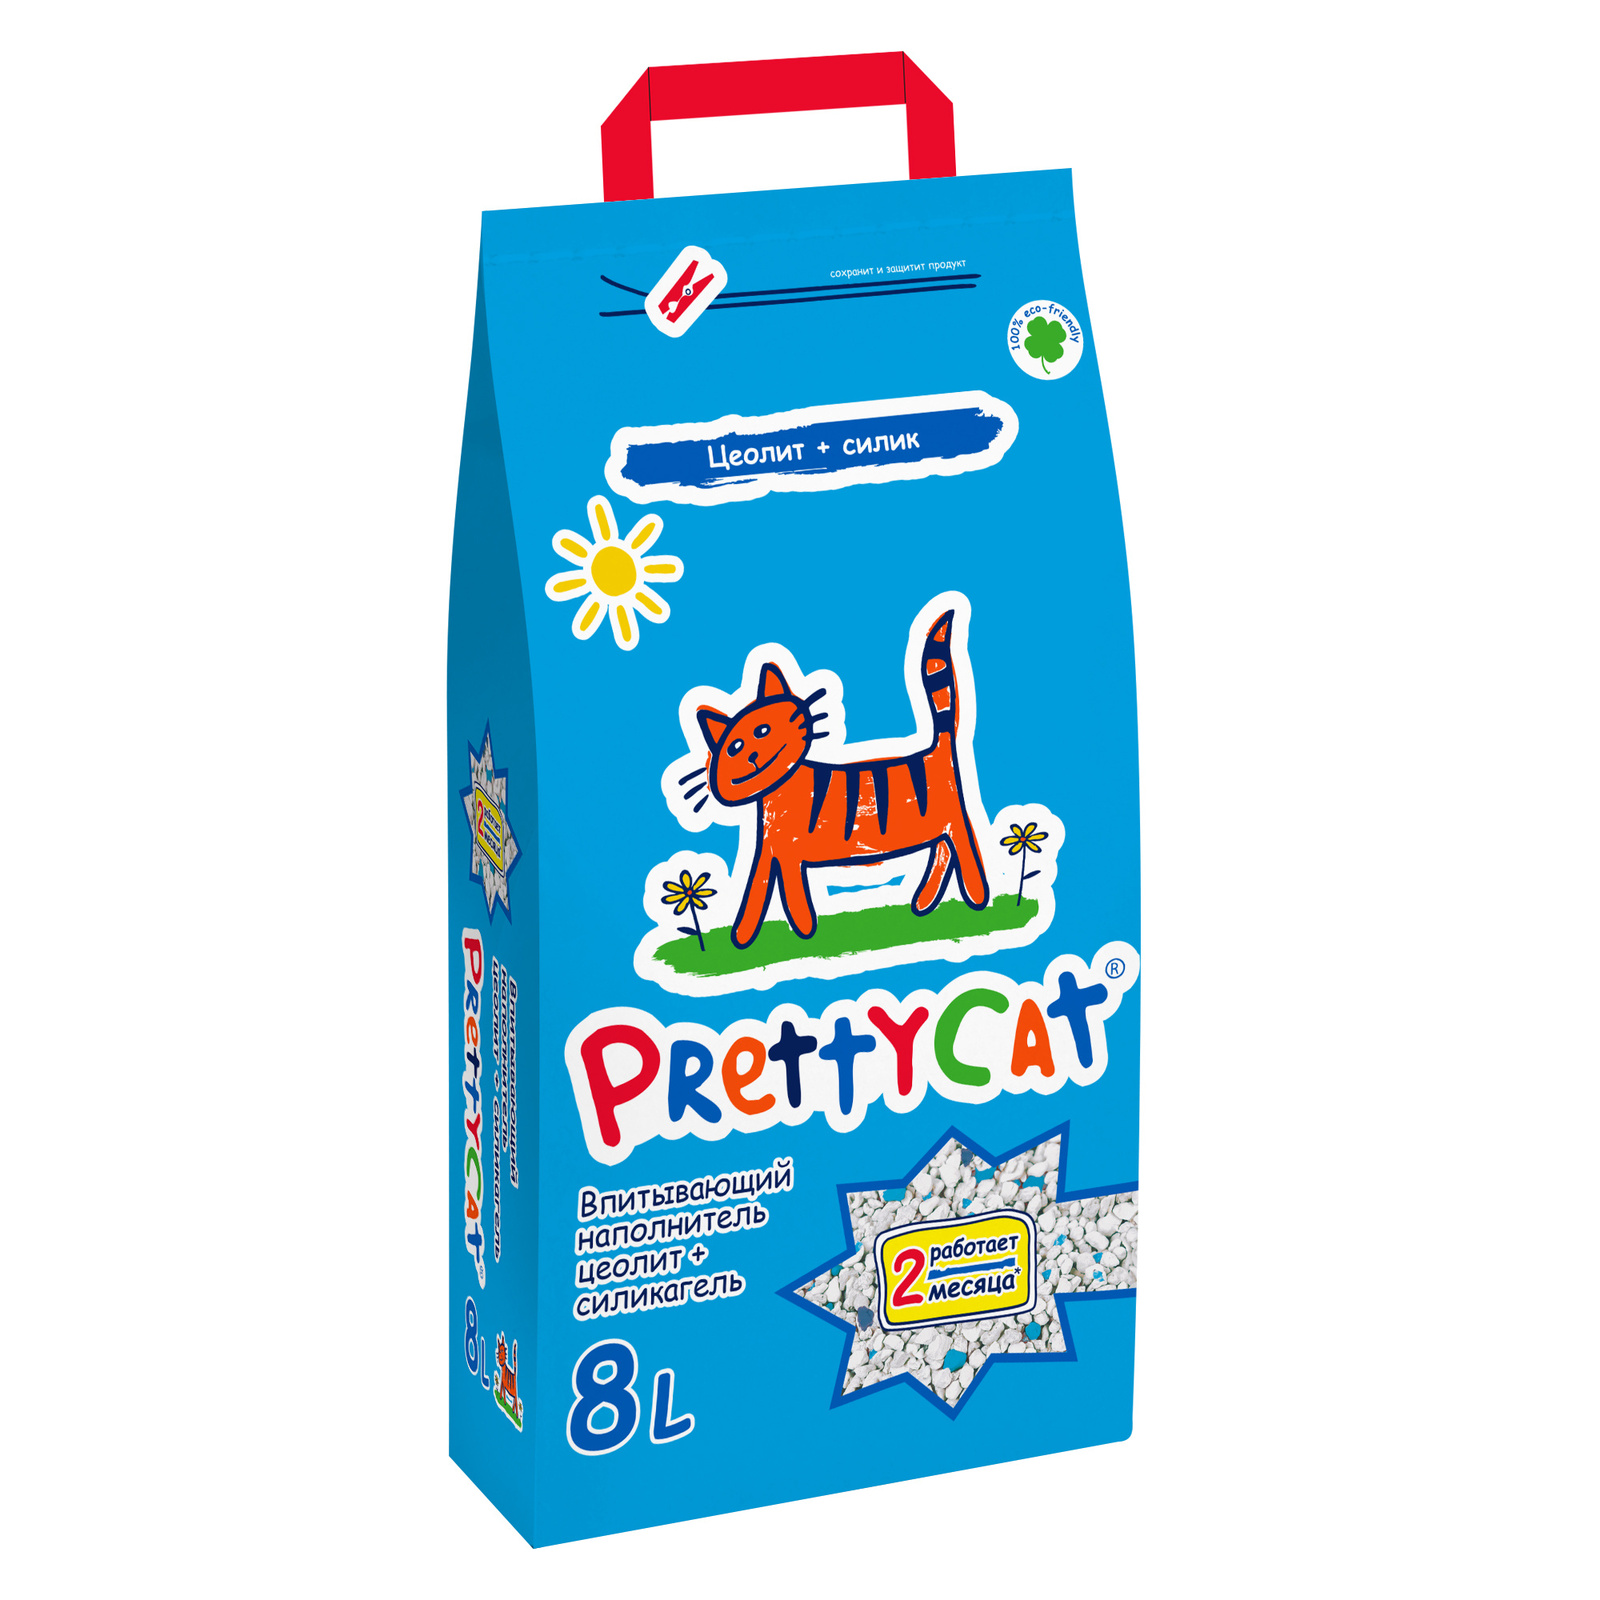 PrettyCat PrettyCat наполнитель впитывающий для кошачьих туалетов (4 кг)